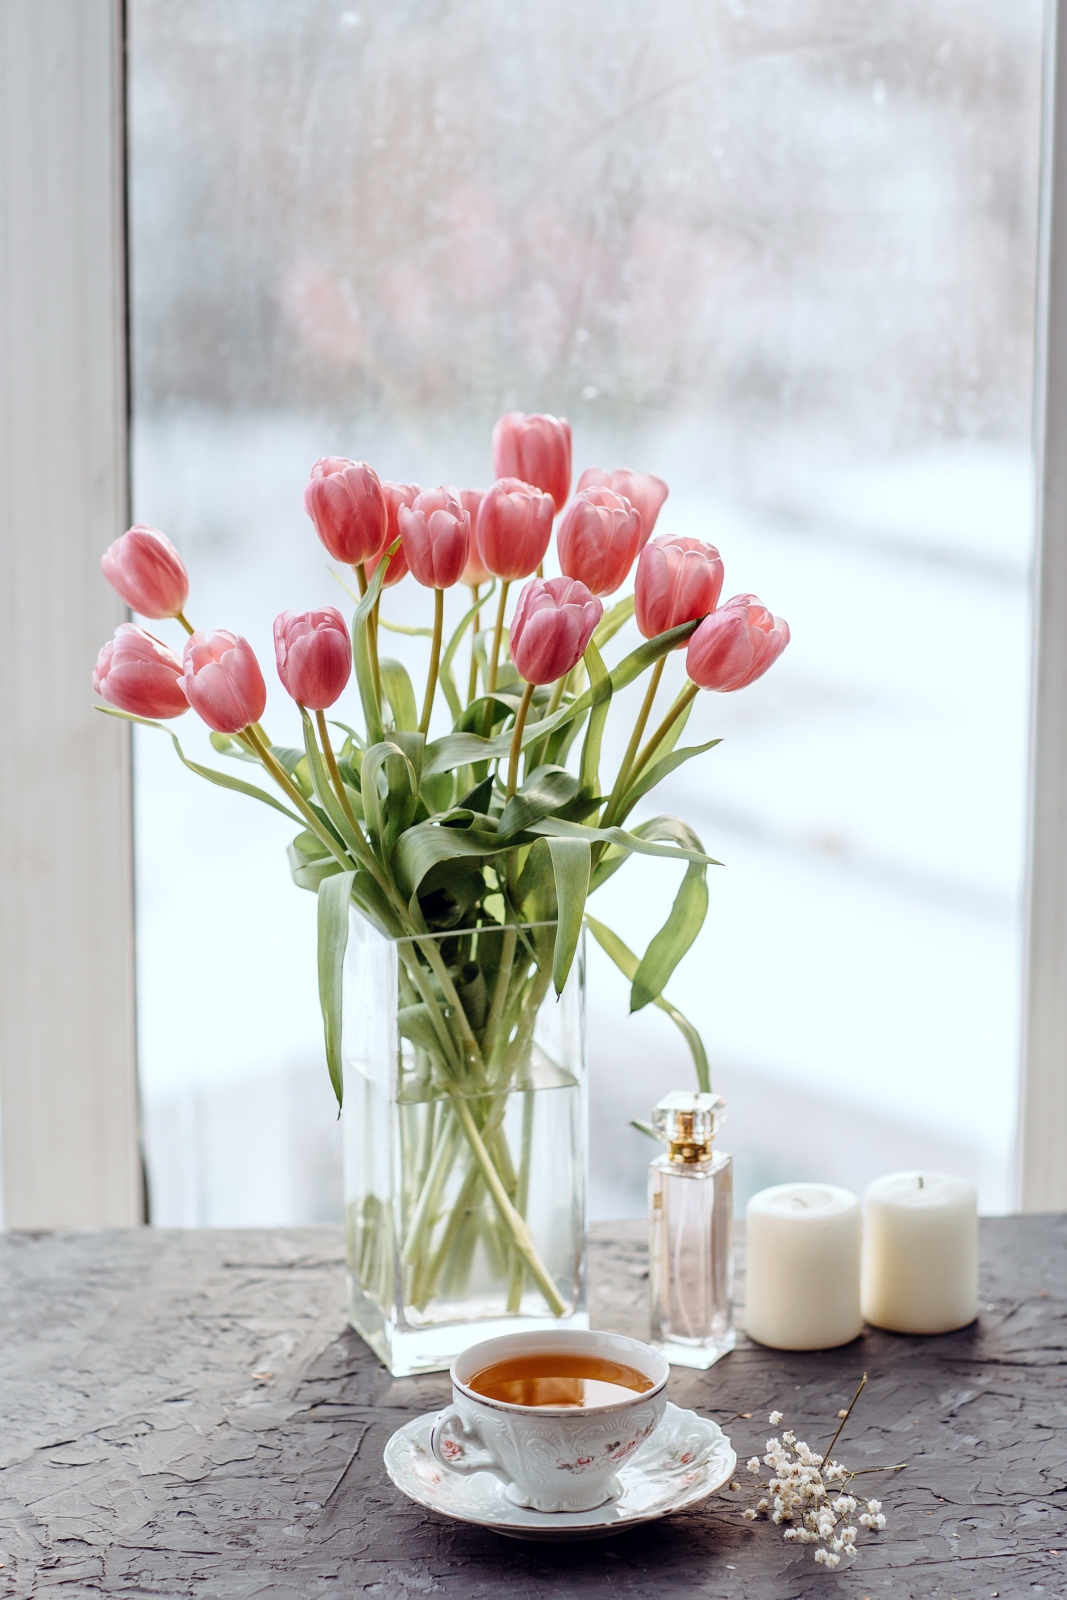 Descubra 48 kuva tulipes en vase - Thptnganamst.edu.vn